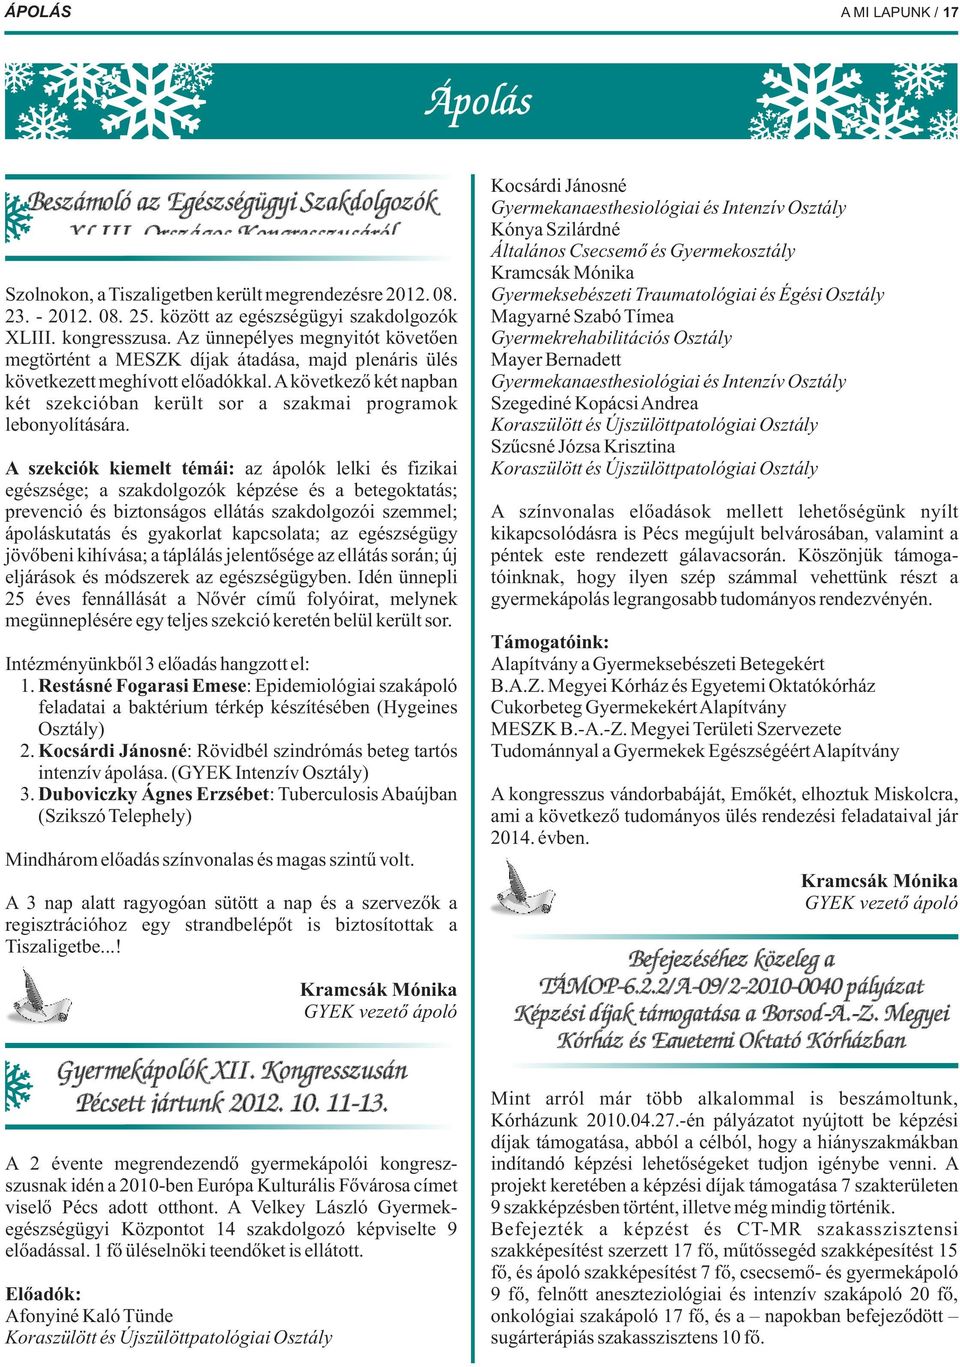 Osztály Szolnokon, a Tiszaligetben került megrendezésre 2012. 08. 23. - 2012. 08. 25. között az egészségügyi szakdolgozók Magyarné Szabó Tímea XLIII. kongresszusa.